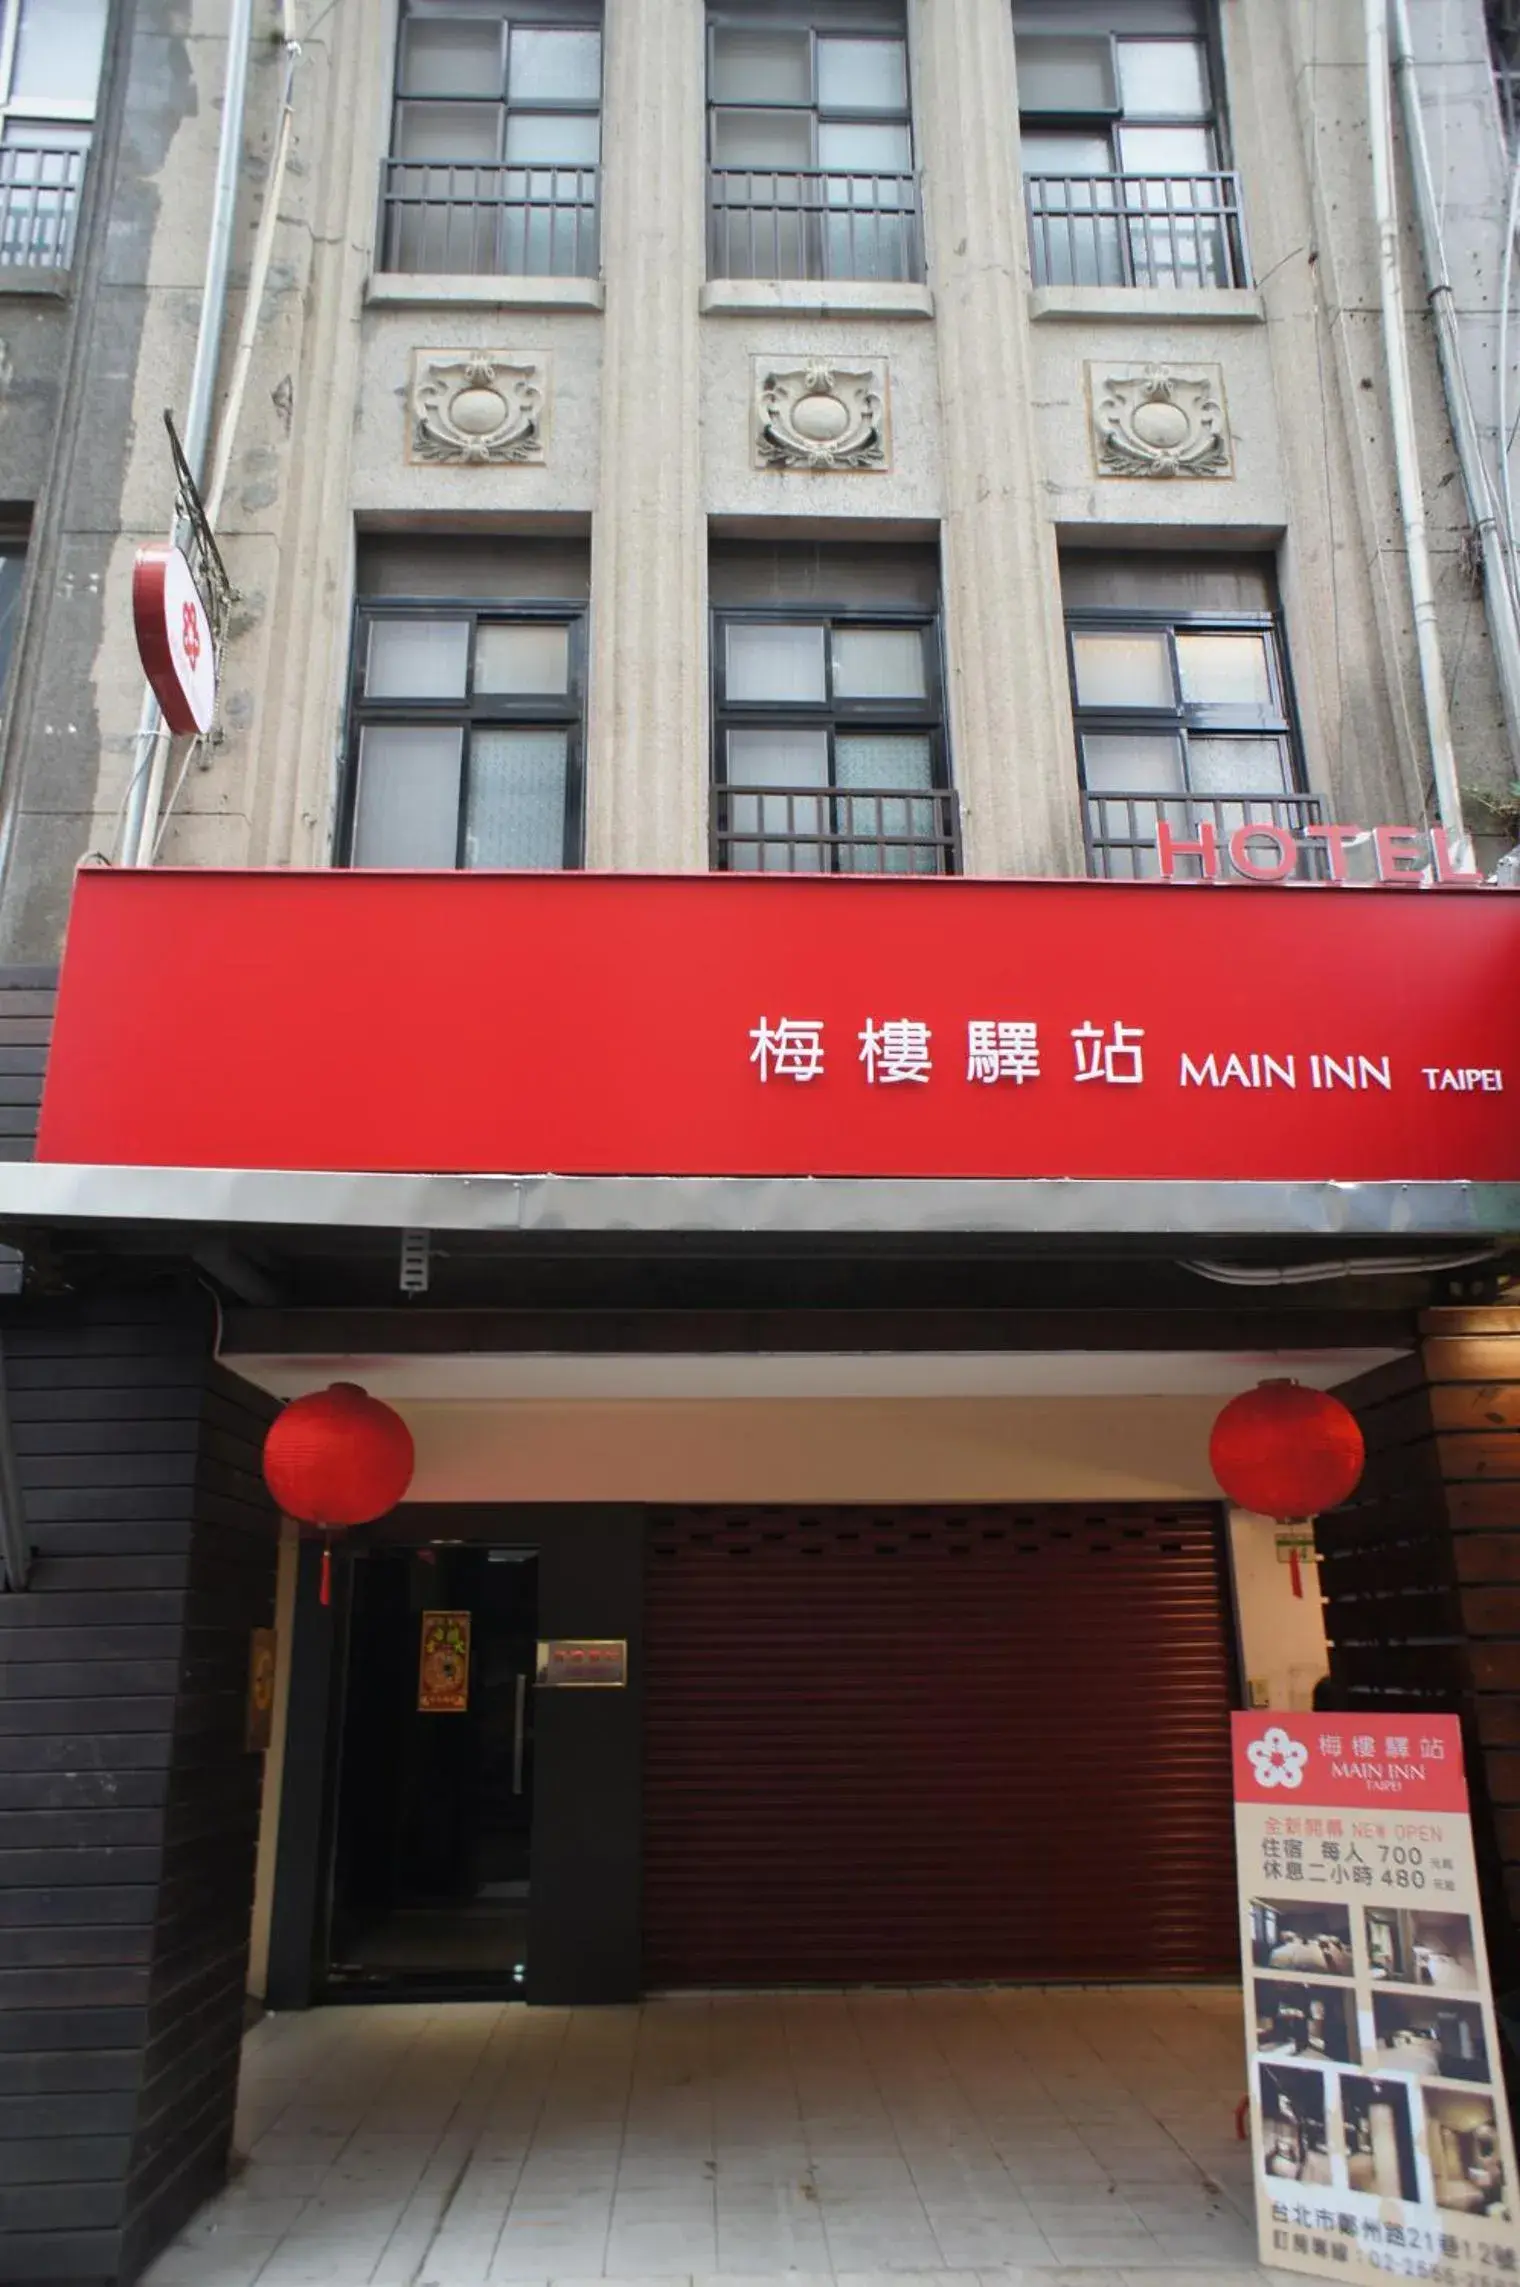 Facade/entrance, Property Building in Main Inn Taipei